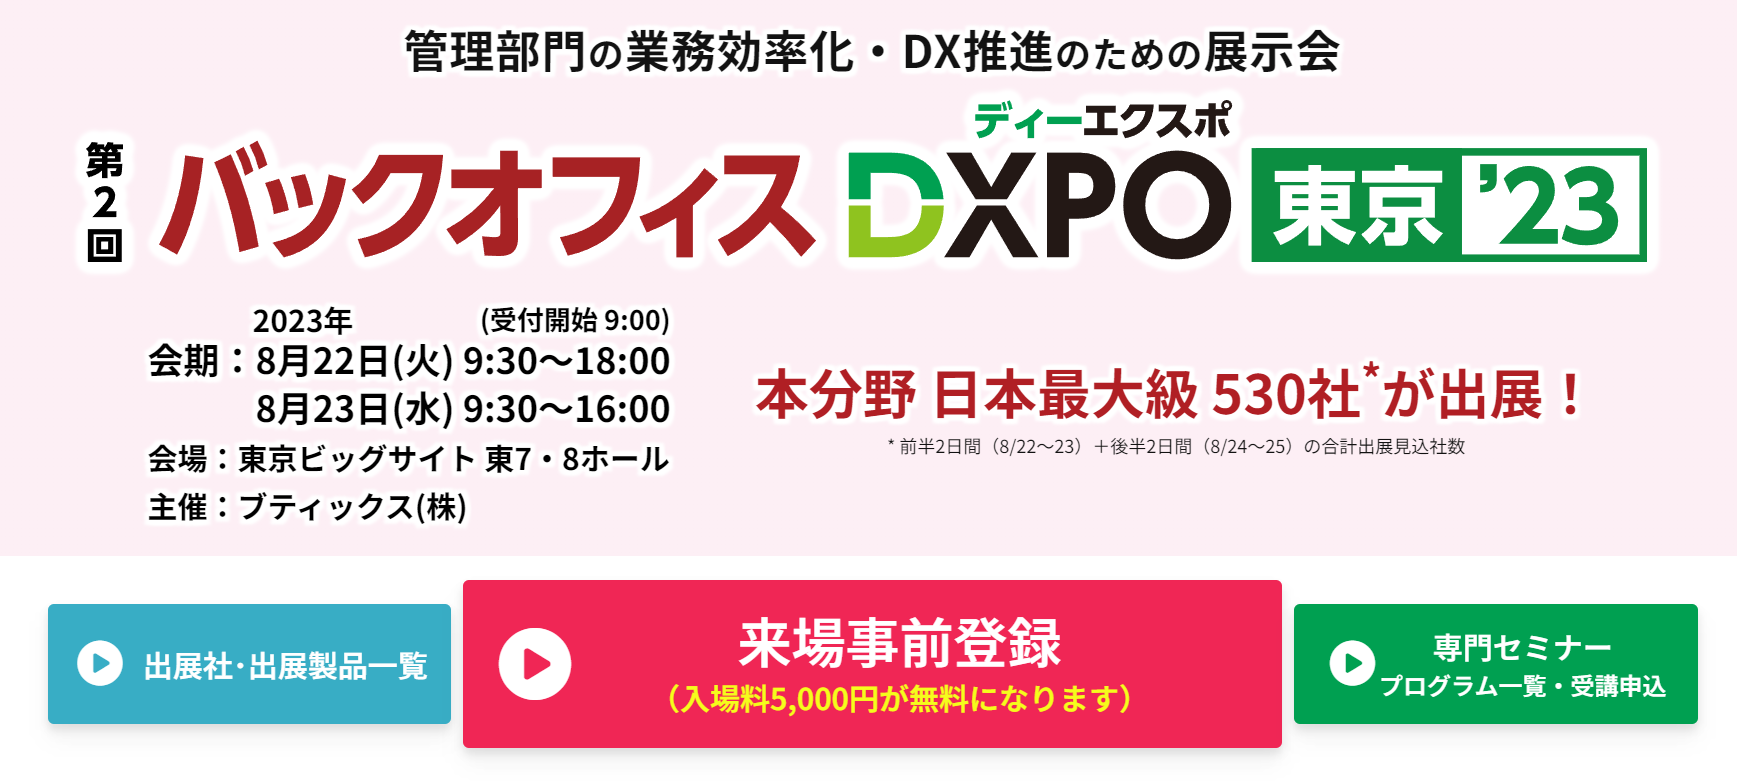 】バックオフィスDXPO -IT・DX展示会- - dxpo.jp.png